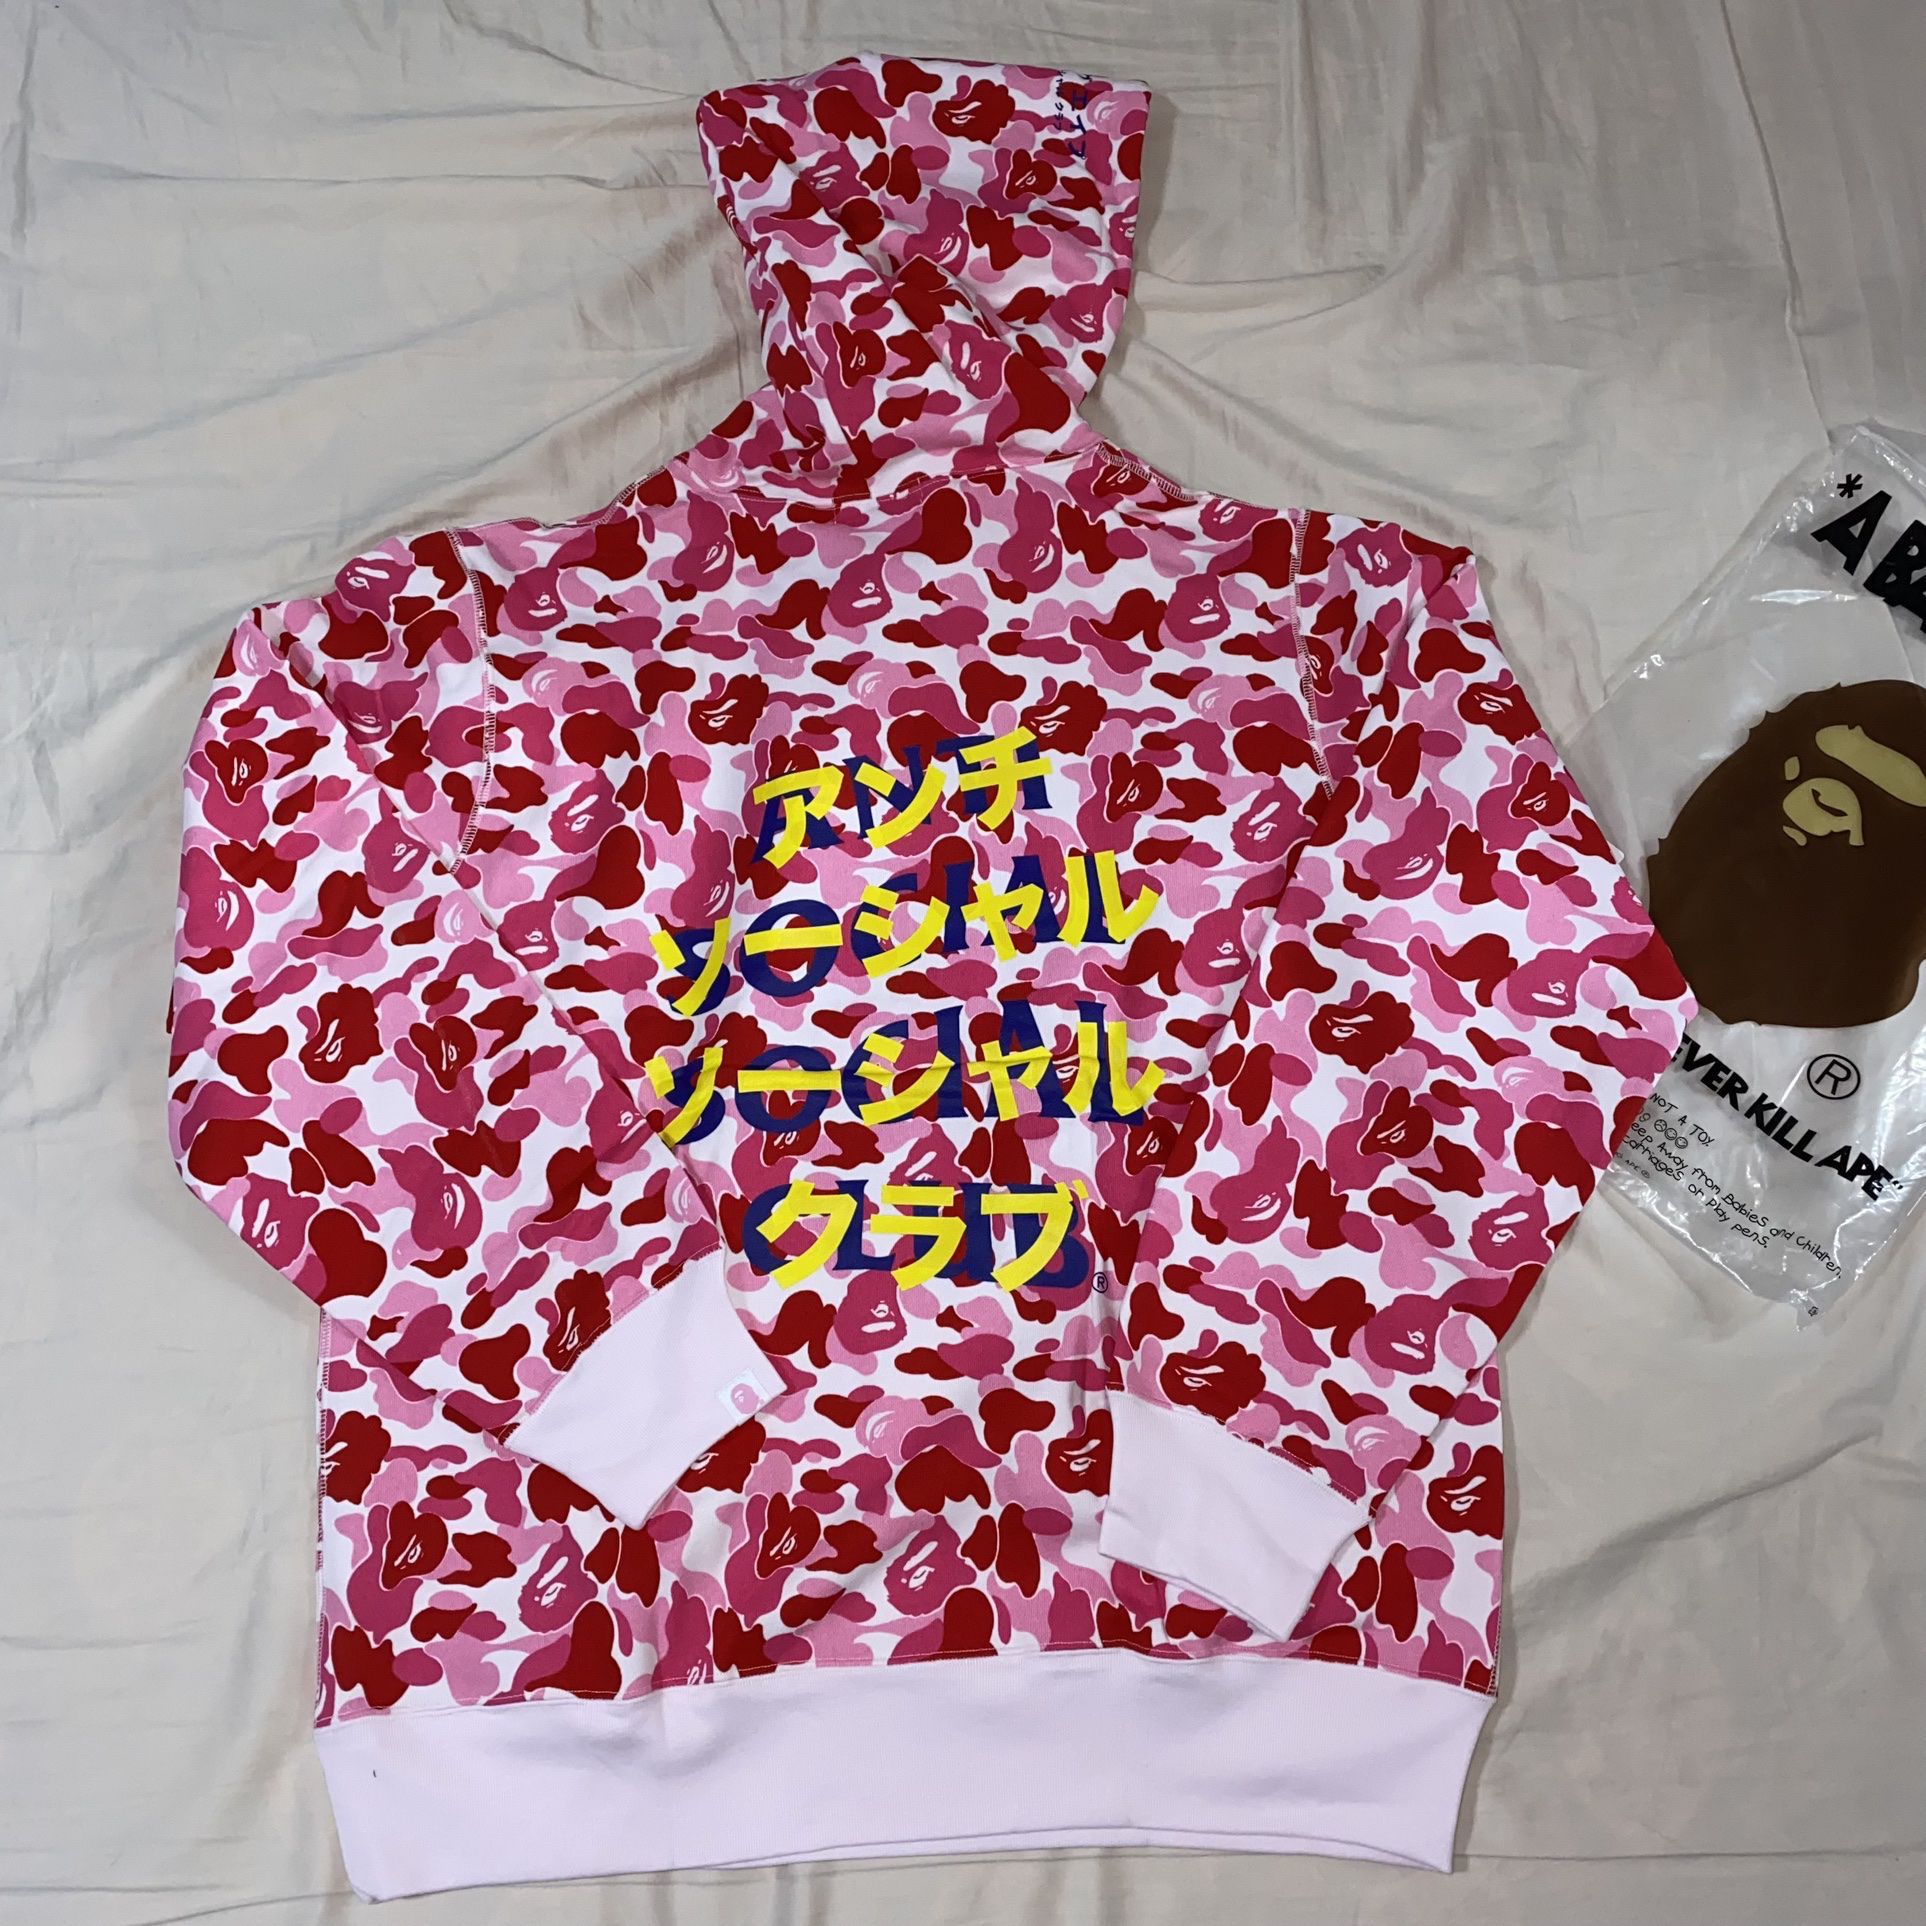 bape x assc pink camo hoodie size L and XL